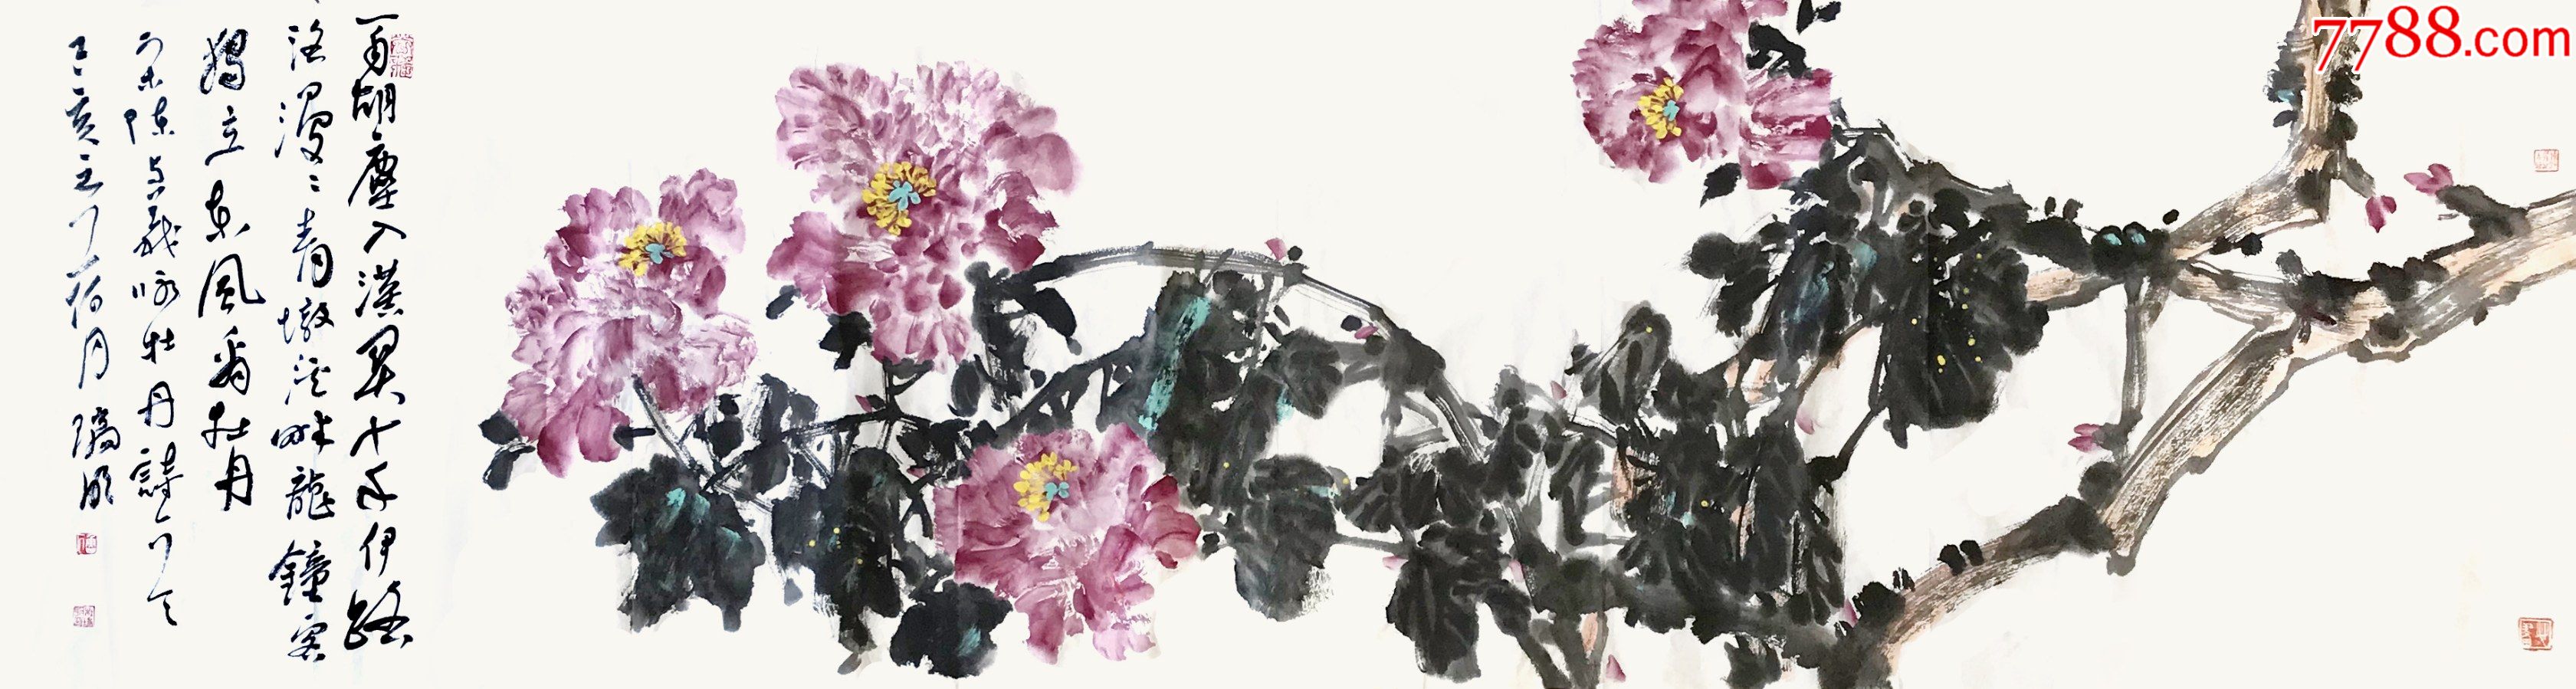 【保真】杜瑞明,山东省美术家协会会员六尺对开横幅花鸟画写意写意